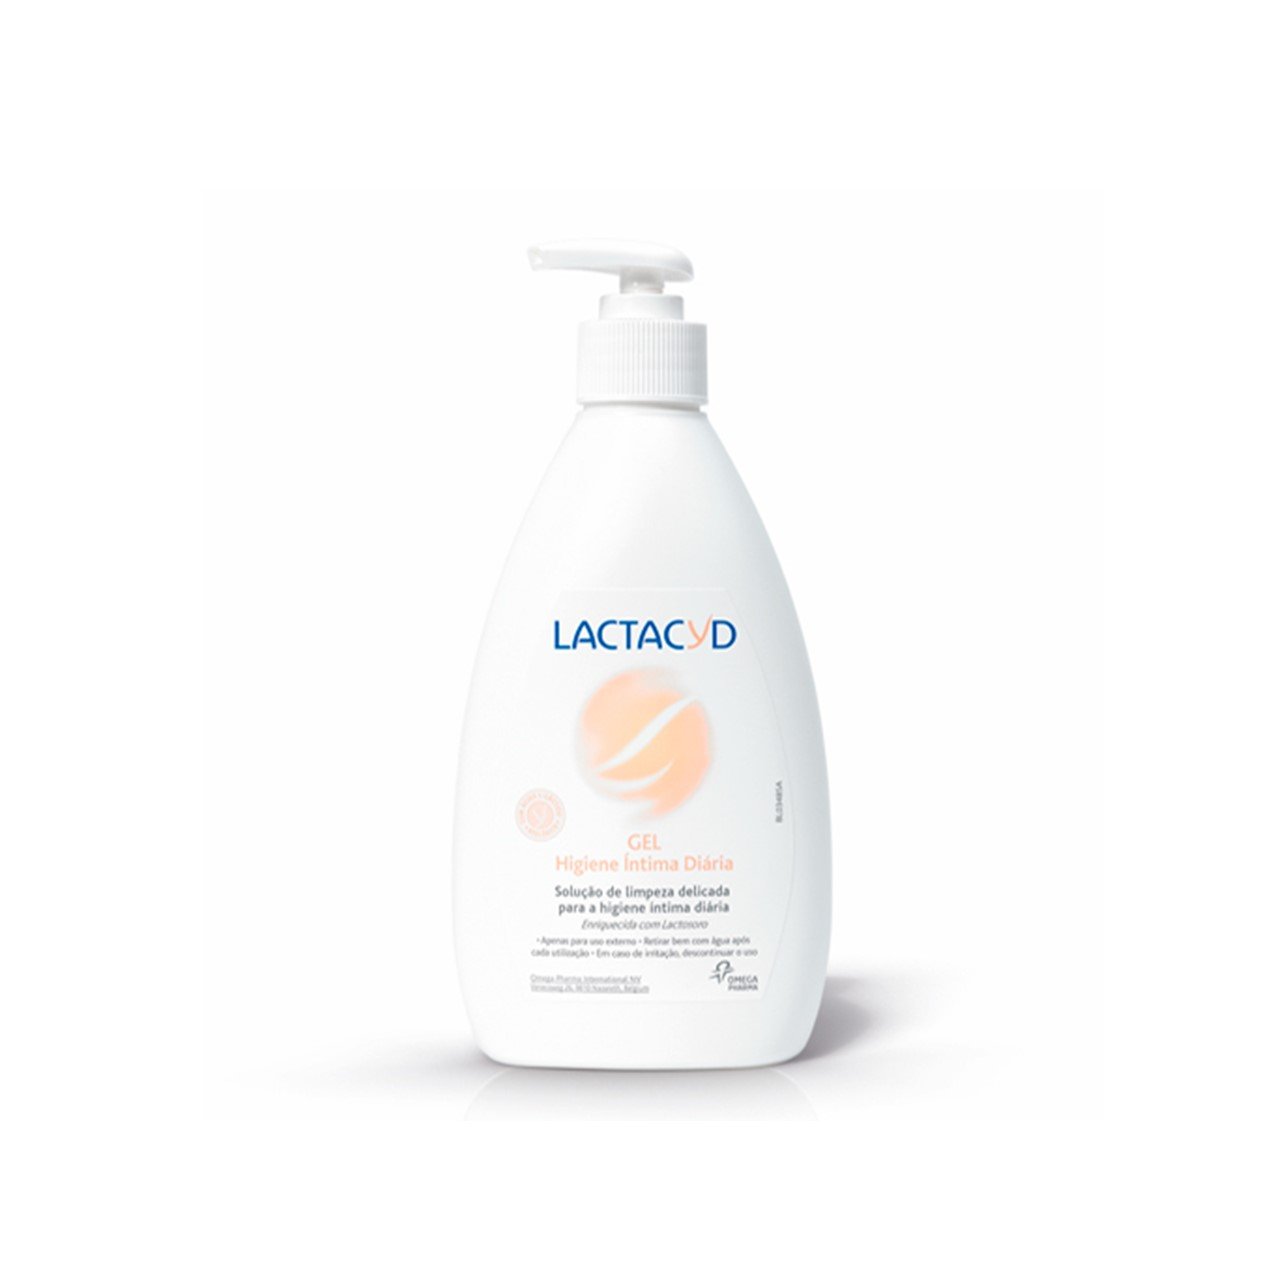 Lactacyd Intimate Hygiene Gel 200ml (6.76fl oz)